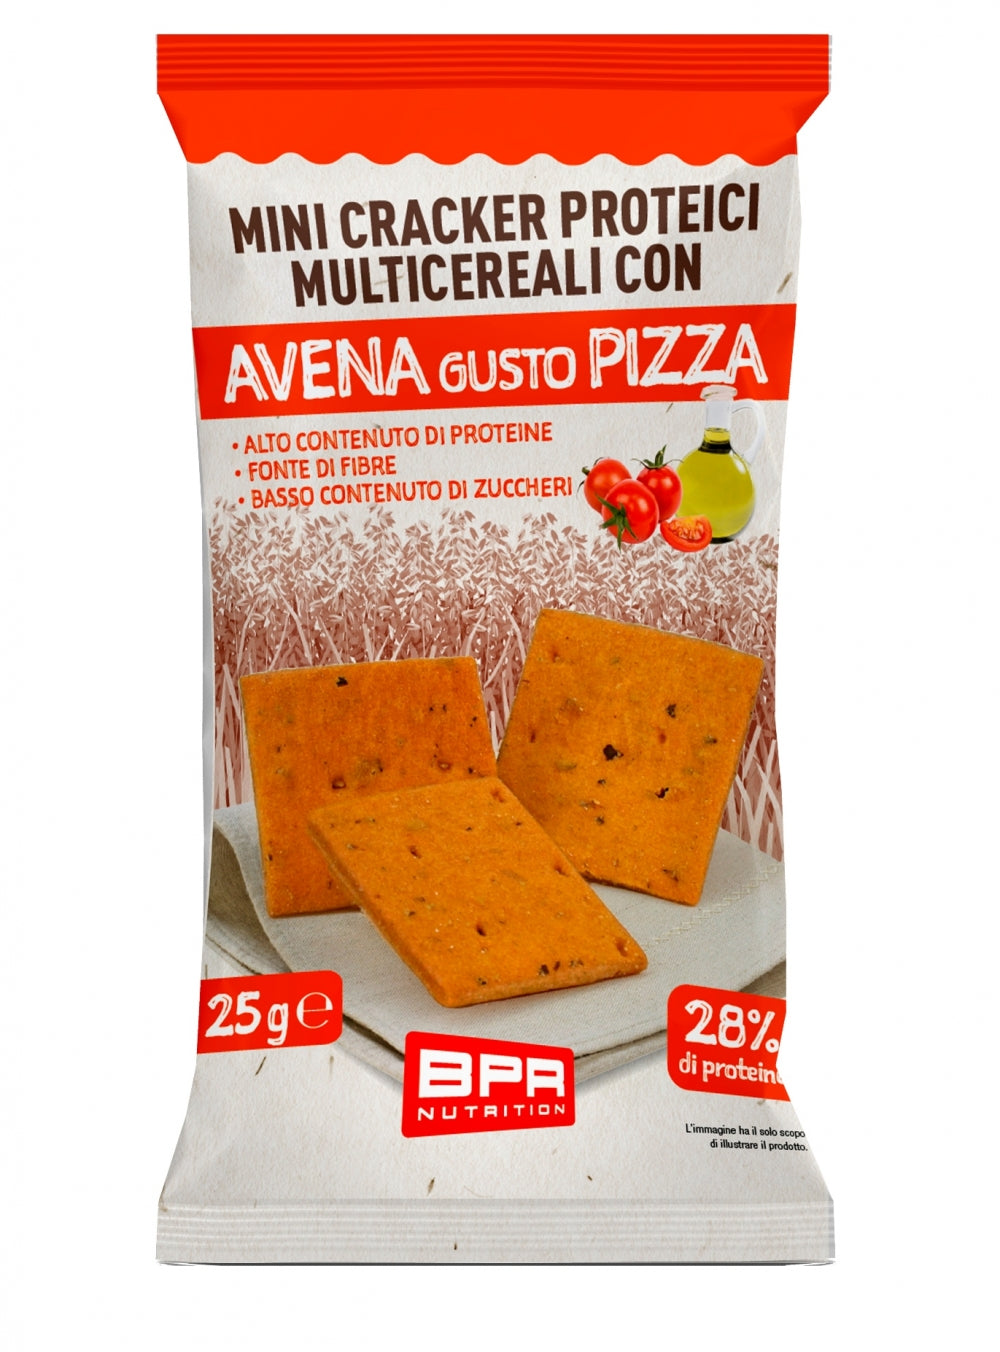 Bpr Nutrition - Mini Cracker Proteici Multicereali con Avena gusto Pizza 25g